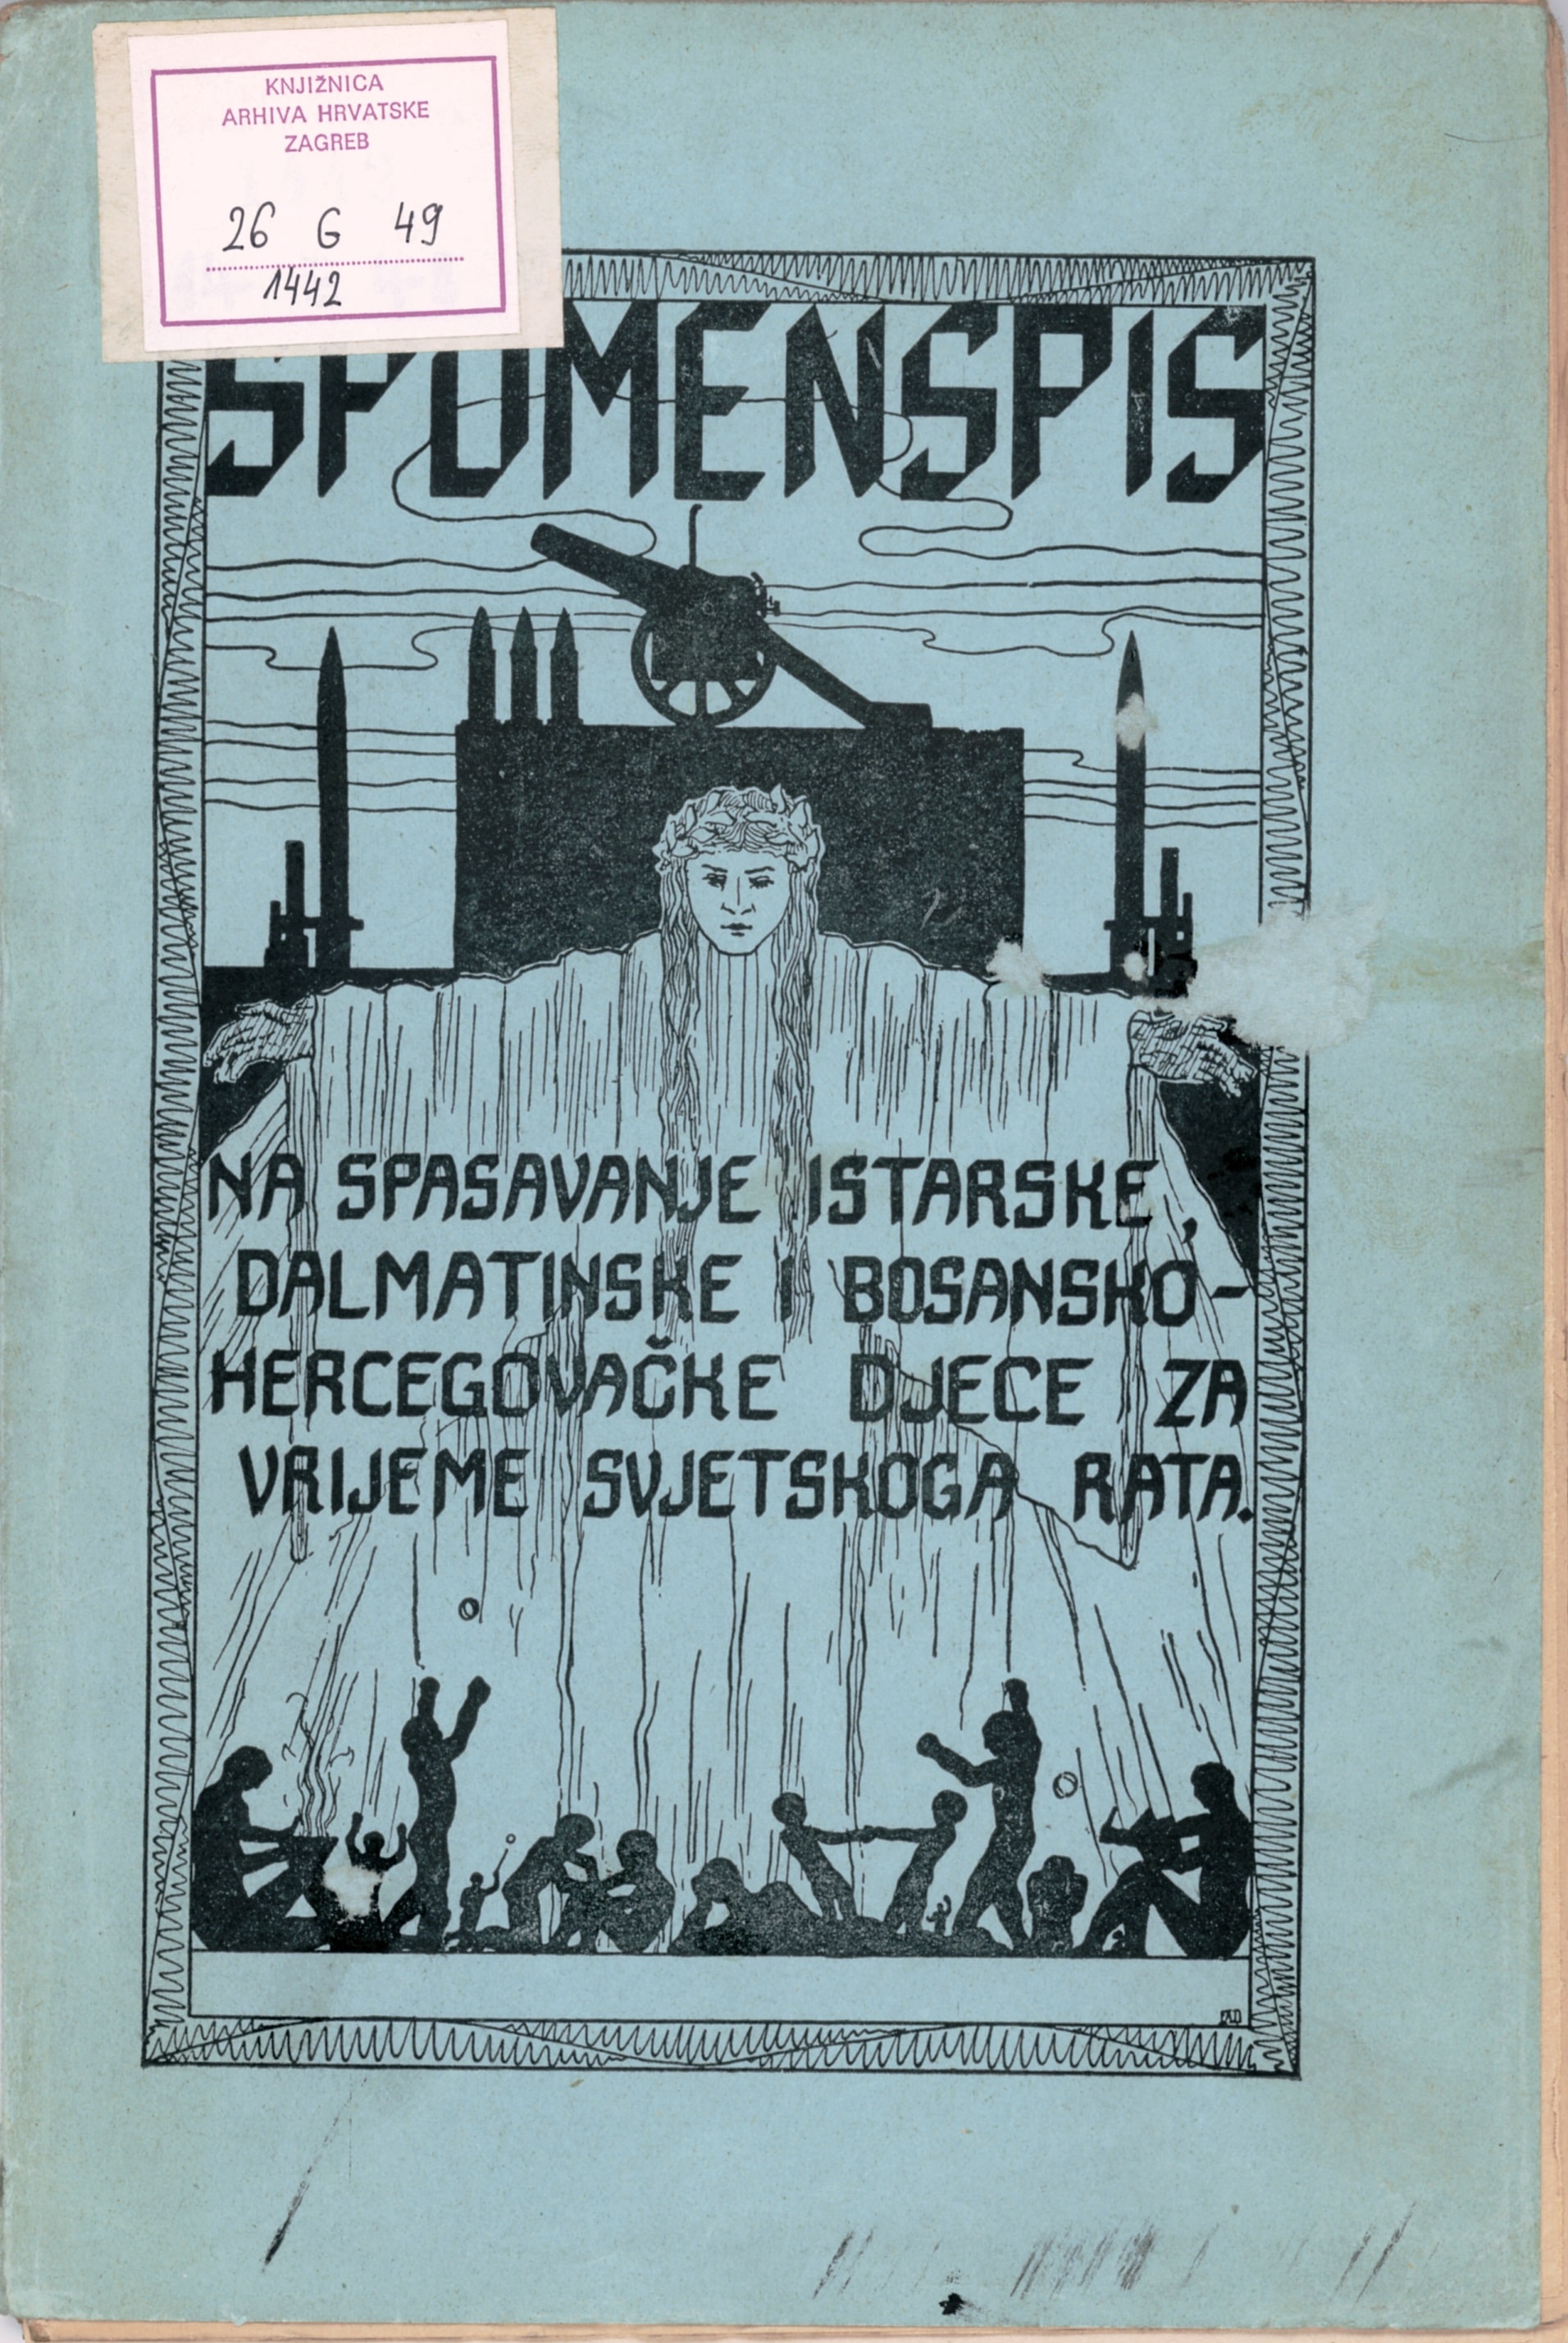 Spomenspis na spasavanje istarske, dalmatinske i bosanskohercegovačke djece za vrijeme svjetskoga rata, Zagreb, 1921. (Knjižnica HDA)